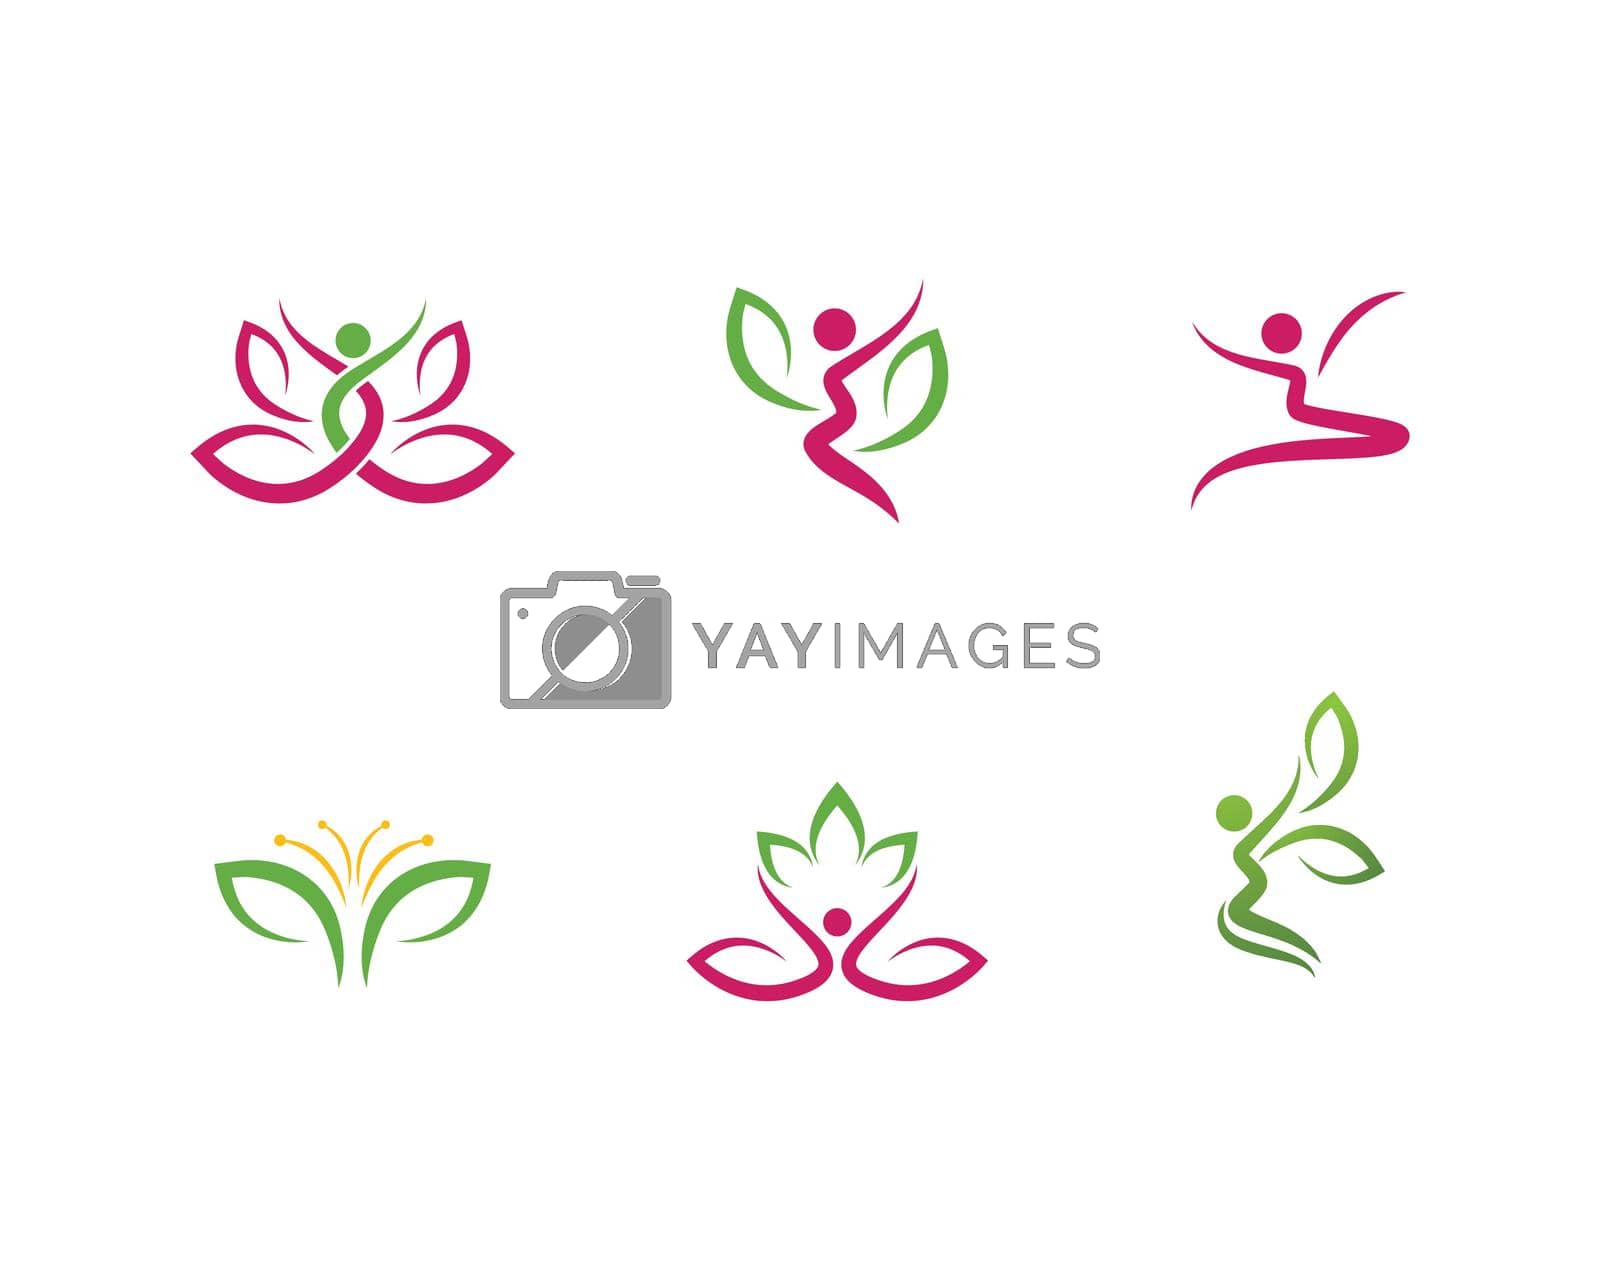 Yoga logo template vector icon design